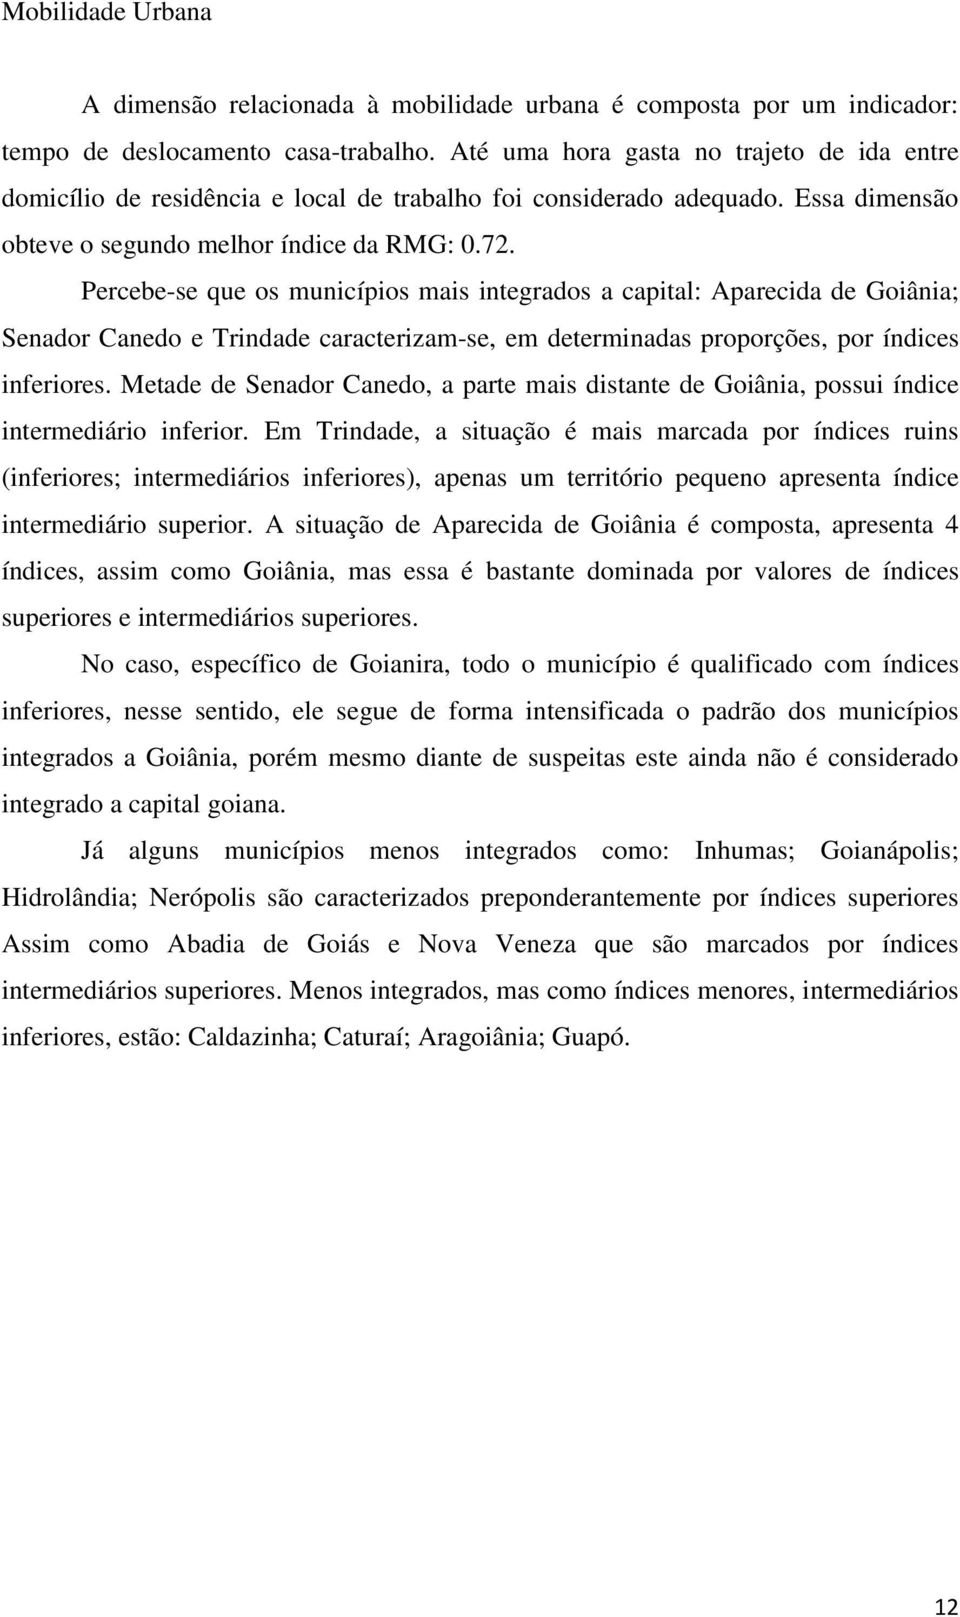 Percebe-se que os municípios mais integrados a capital: Aparecida de Goiânia; Senador Canedo e Trindade caracterizam-se, em determinadas proporções, por índices inferiores.